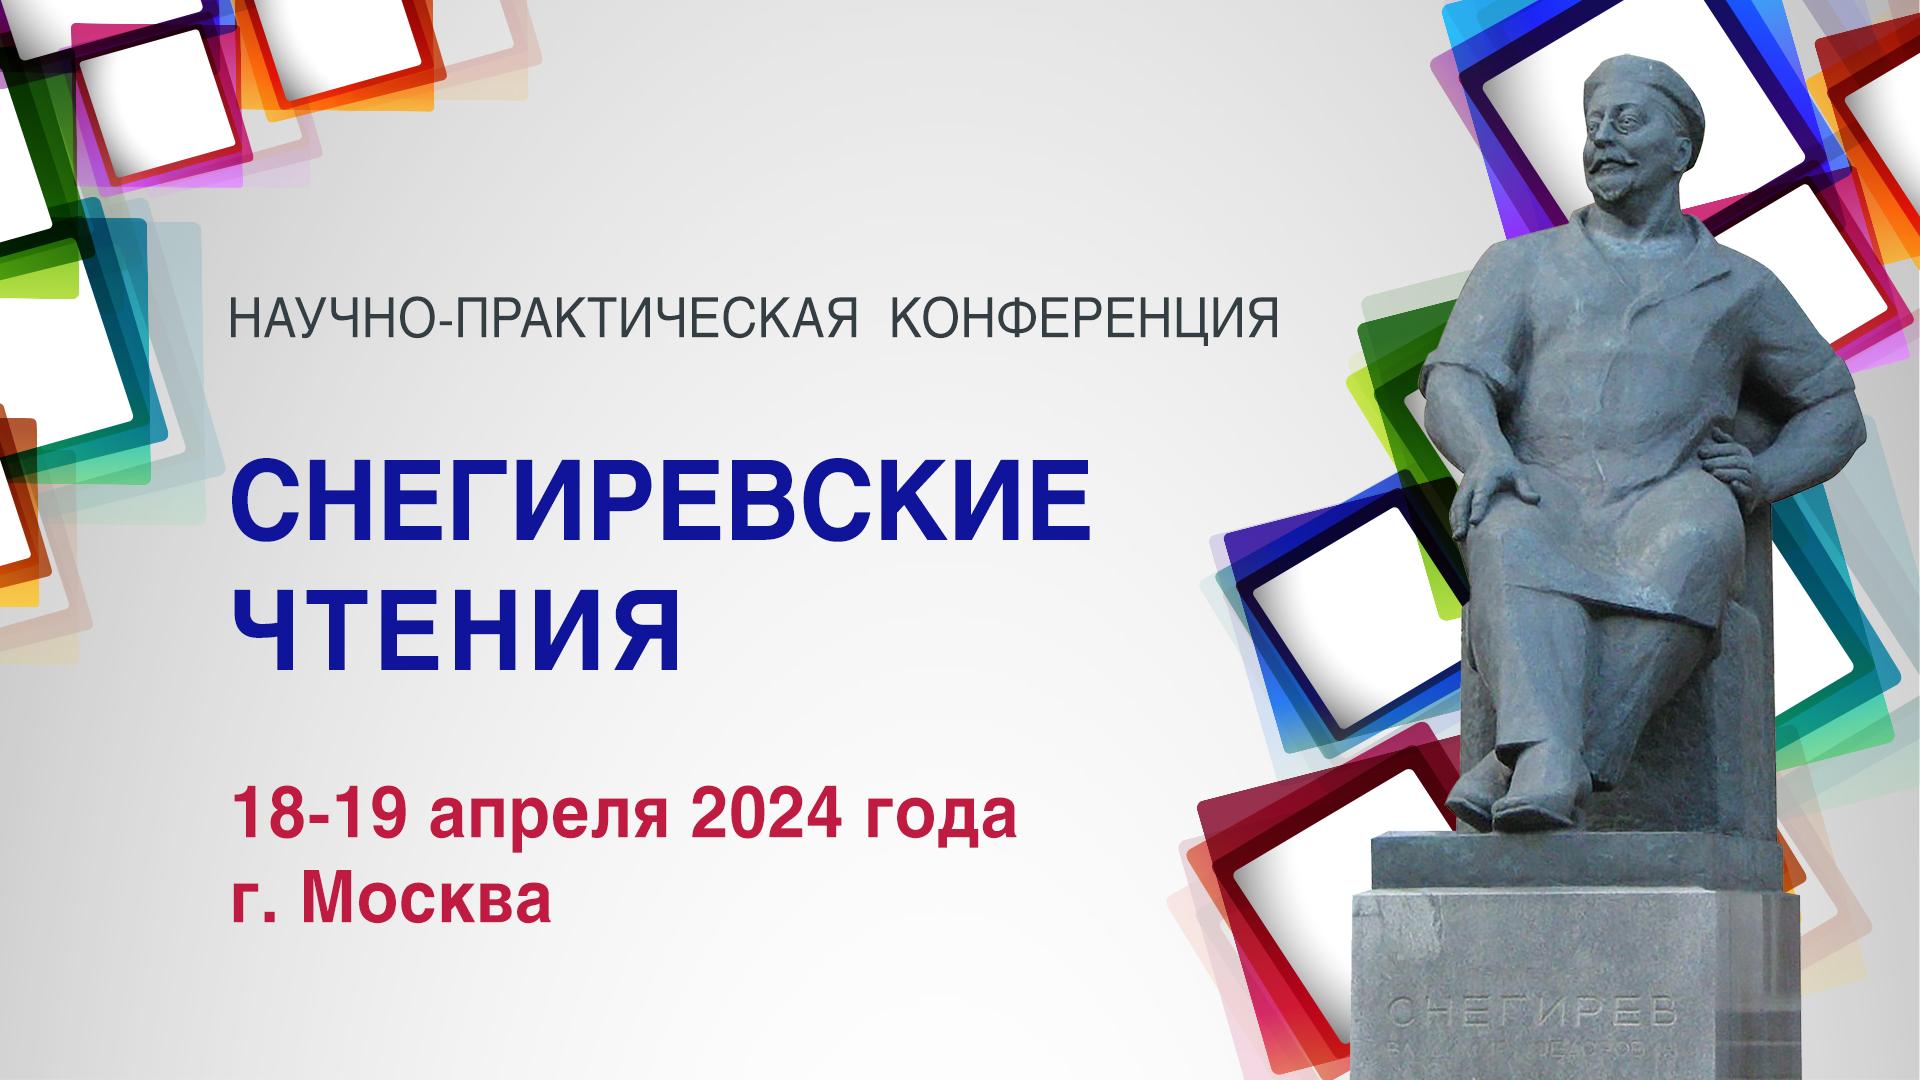 18-19 апреля 2024 состоится образовательная научно-практическая конференция «Снегиревские чтения»